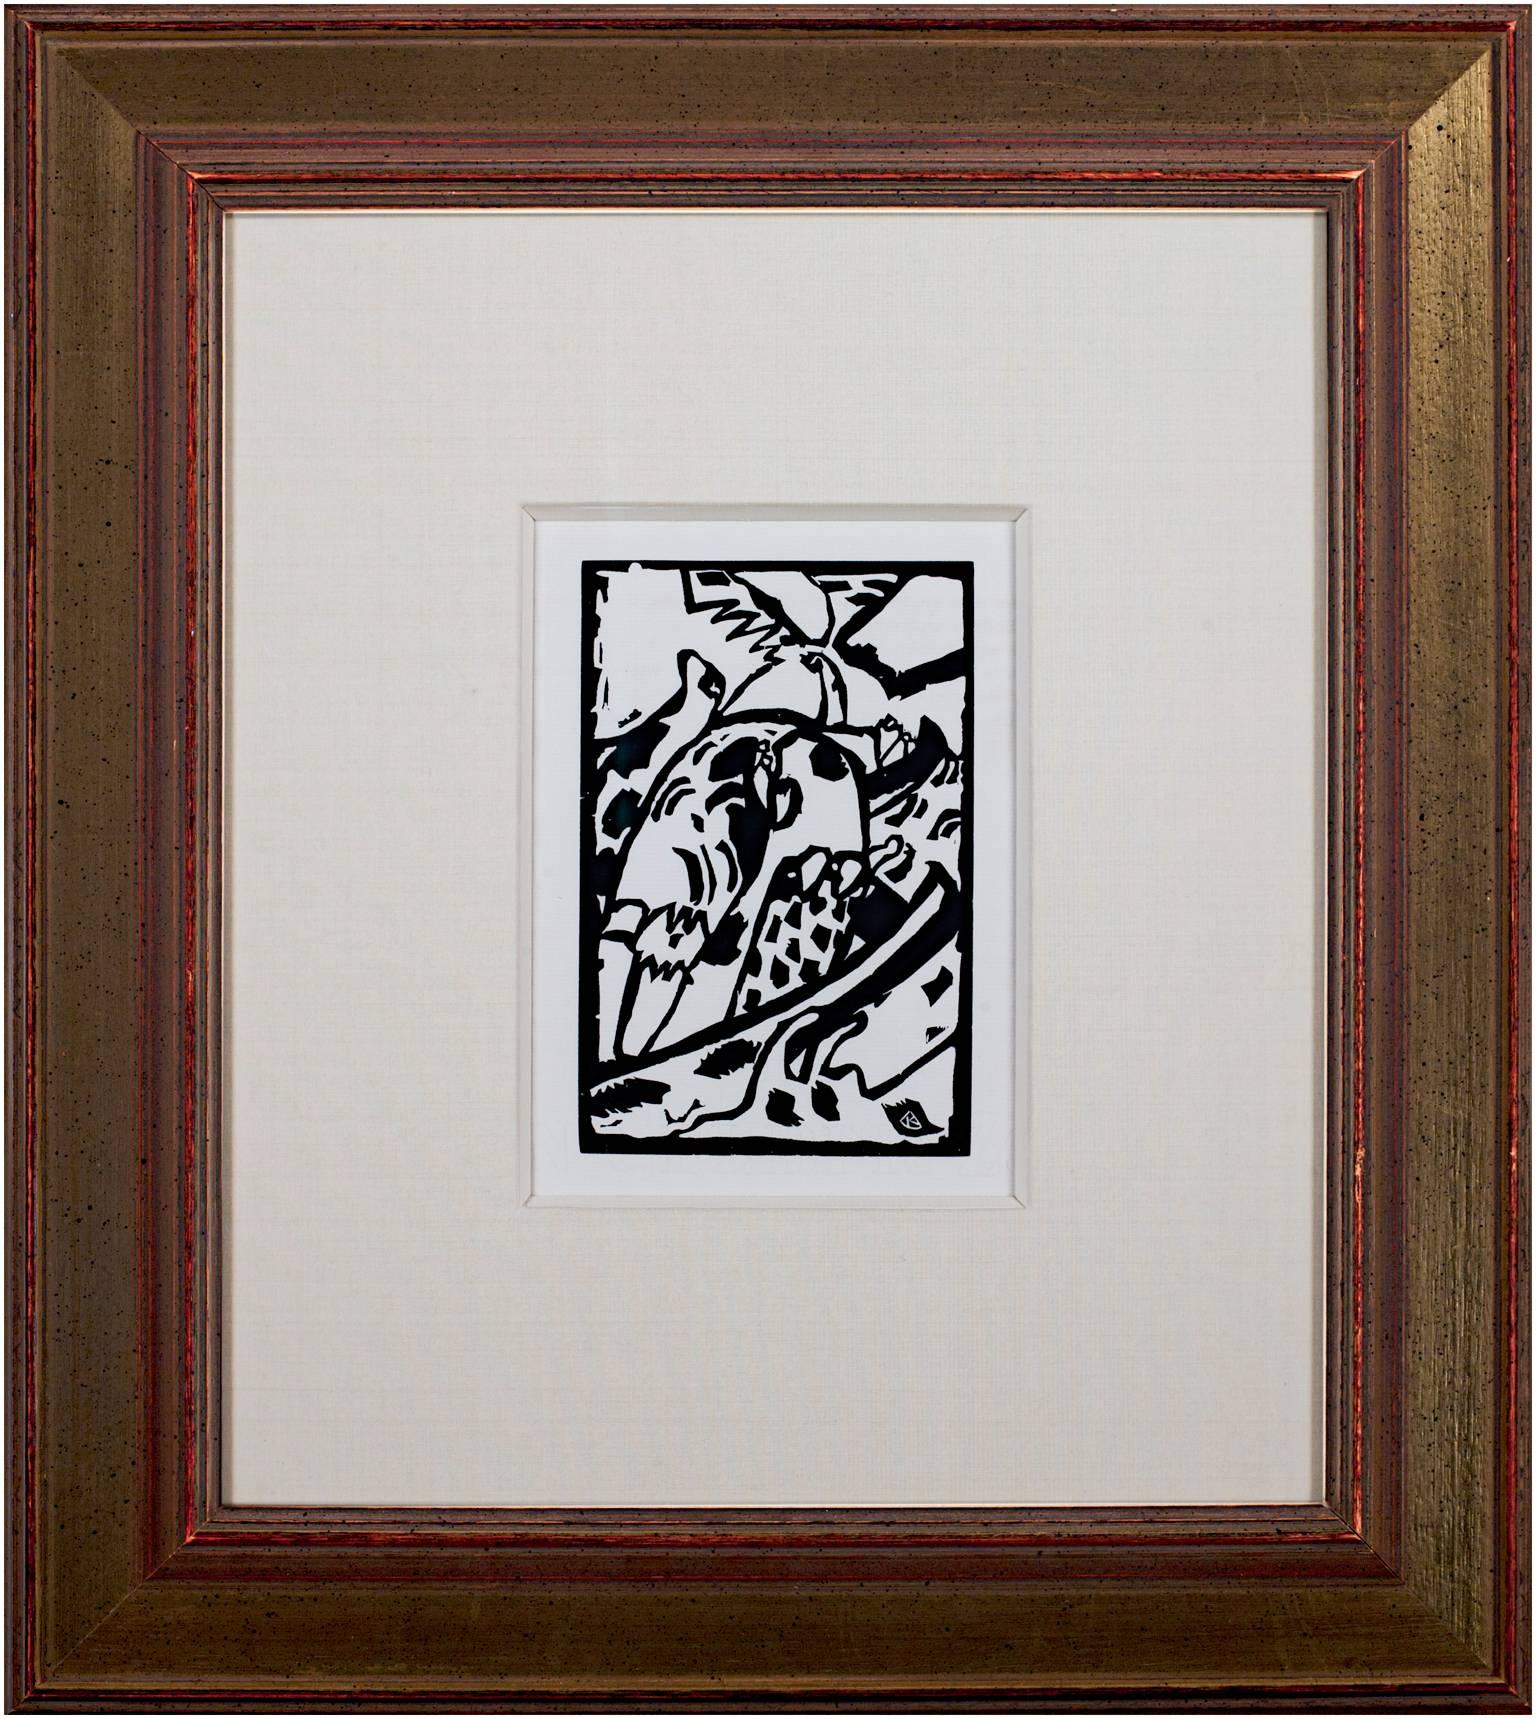 Der vorliegende Holzschnitt stammt aus "Klänge", einem Buch mit Originalgrafiken und Gedichten von Wassily Kandinsky. Diese Erstausgabe wurde in einer Auflage von 300 Exemplaren veröffentlicht, wobei jedes Buch vom Künstler signiert und nummeriert